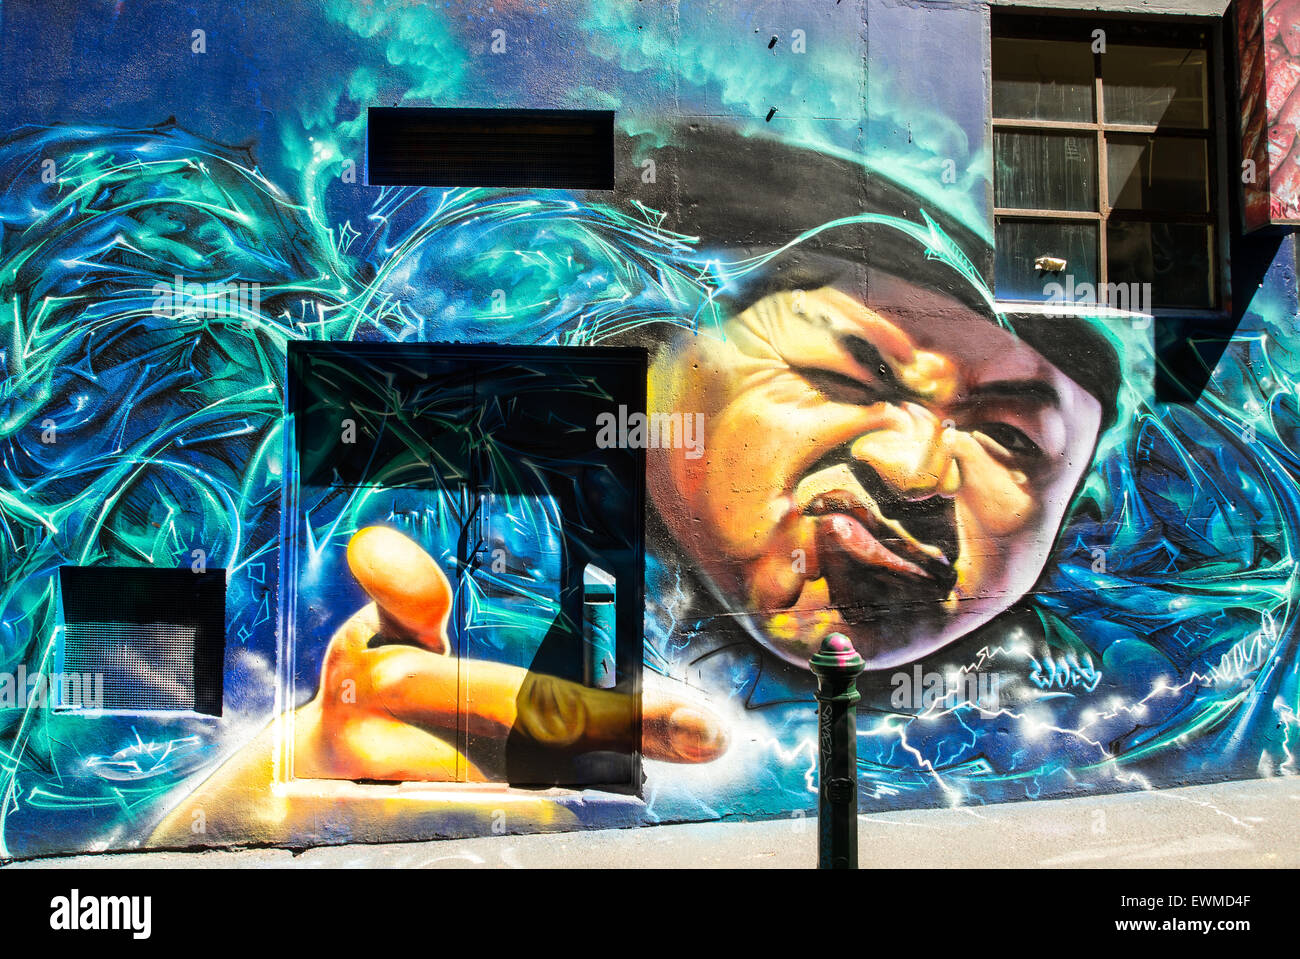 Australien, Melbourne, Graffiti Wandmalereien in der berühmten Hosier Lane im Zentrum Stadt Stockfoto